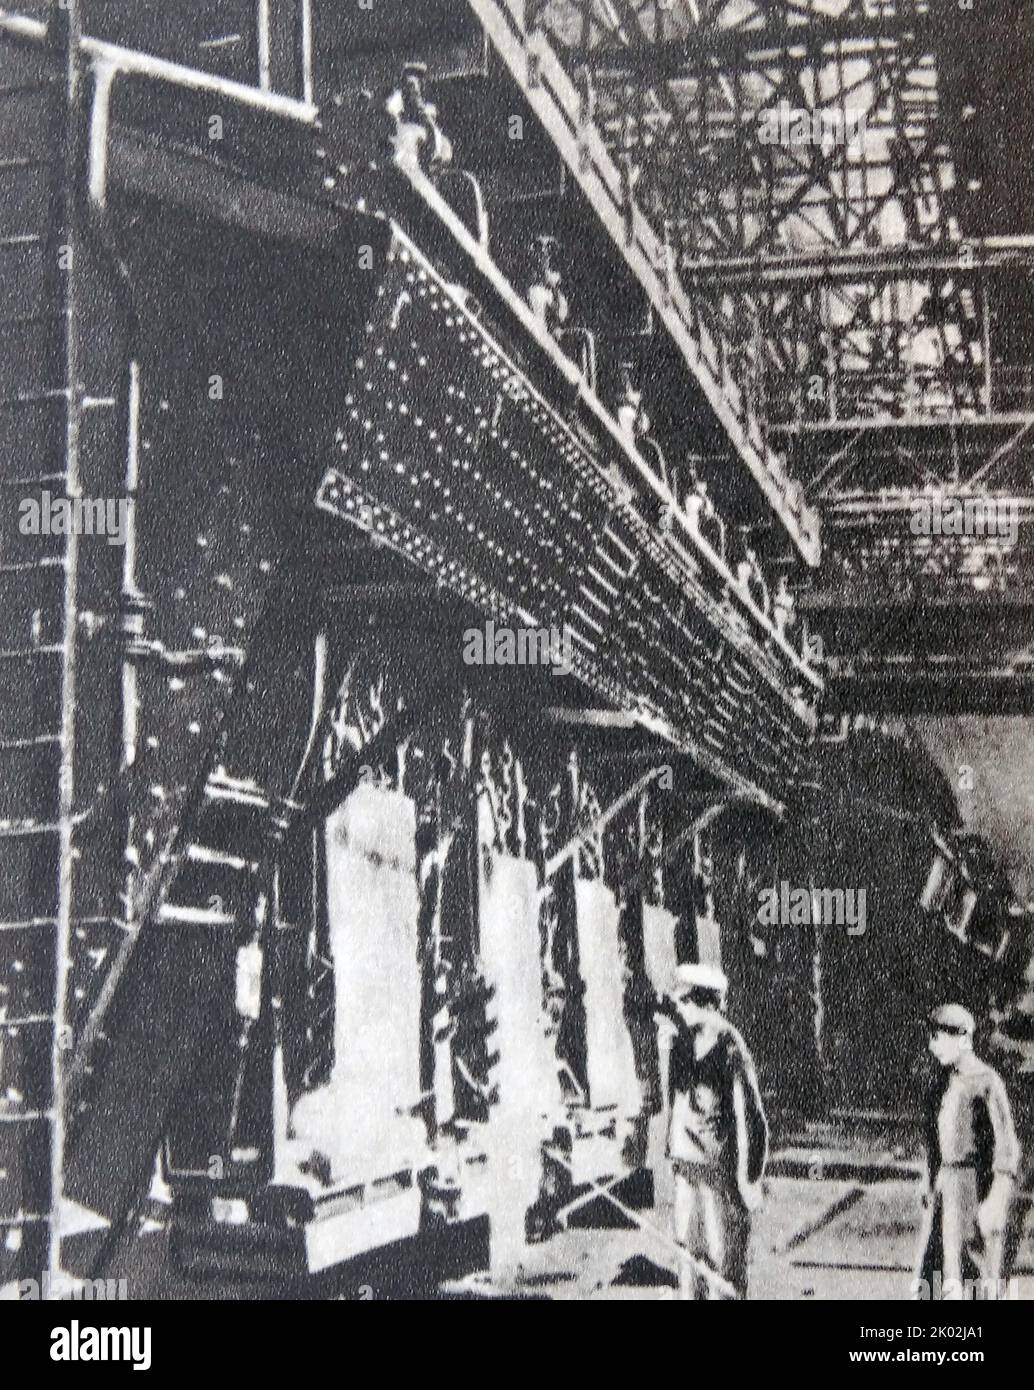 Der restaurierte offene Ofen Nr. 4 der Asowstal-Anlage. Mariupo, Ukraine, 1945. Die Stahlproduktion wurde in Asovstal, der ersten in der UdSSR, in Betrieb genommen Stockfoto